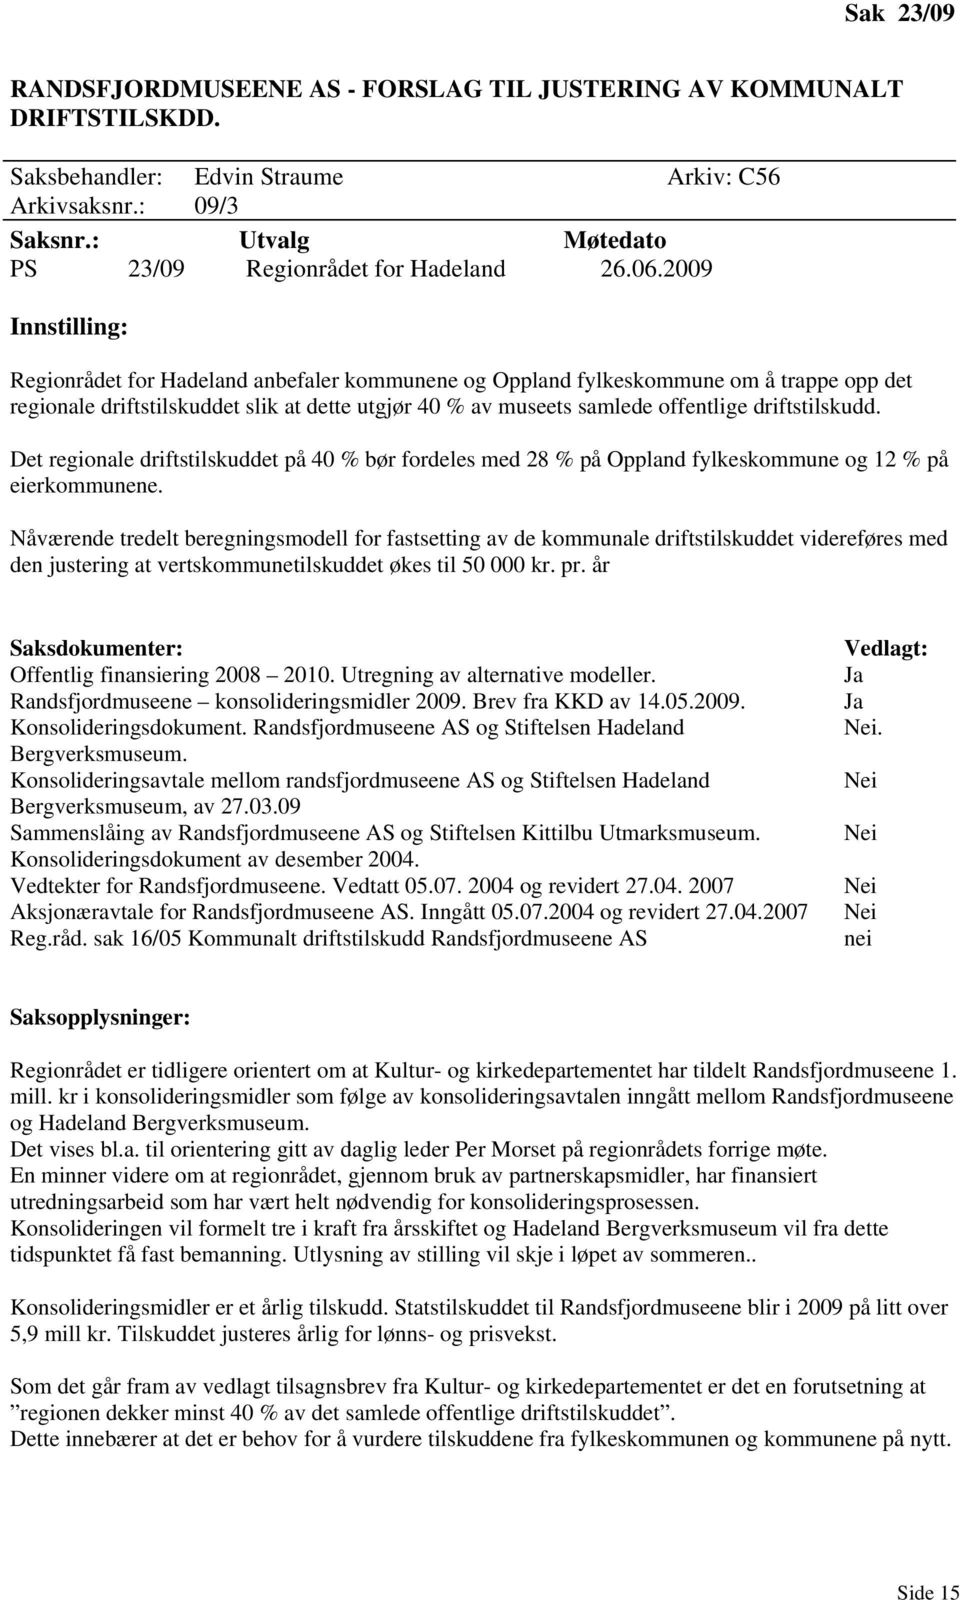 2009 Innstilling: Regionrådet for Hadeland anbefaler kommunene og Oppland fylkeskommune om å trappe opp det regionale driftstilskuddet slik at dette utgjør 40 % av museets samlede offentlige